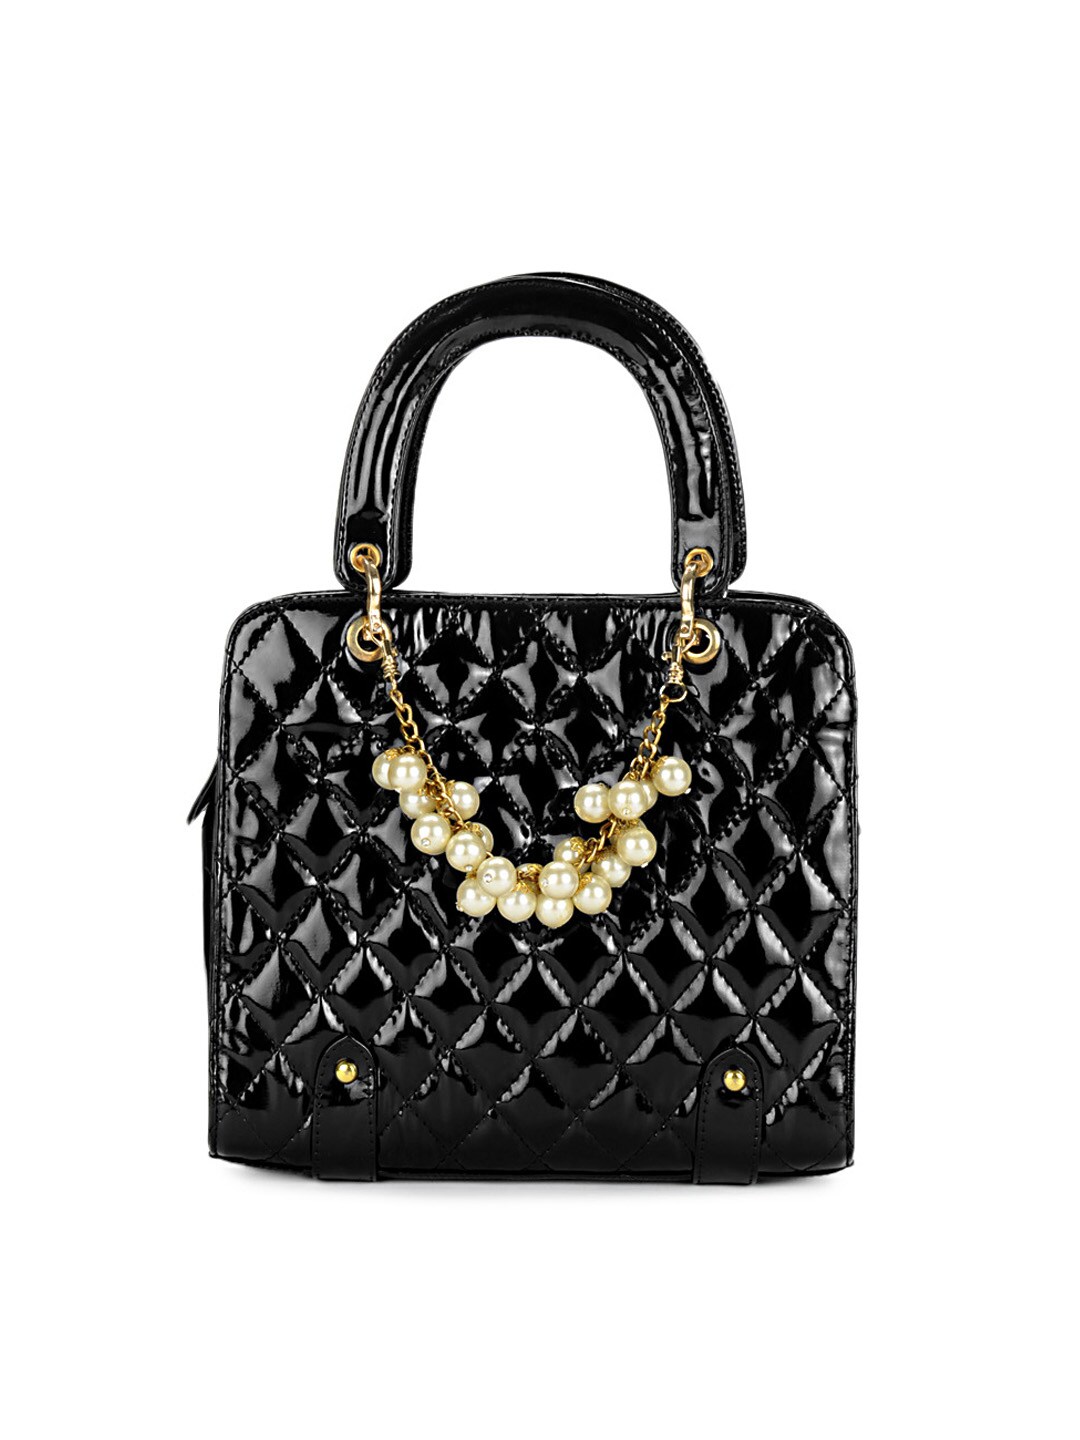 Rocia Women Black Handbag